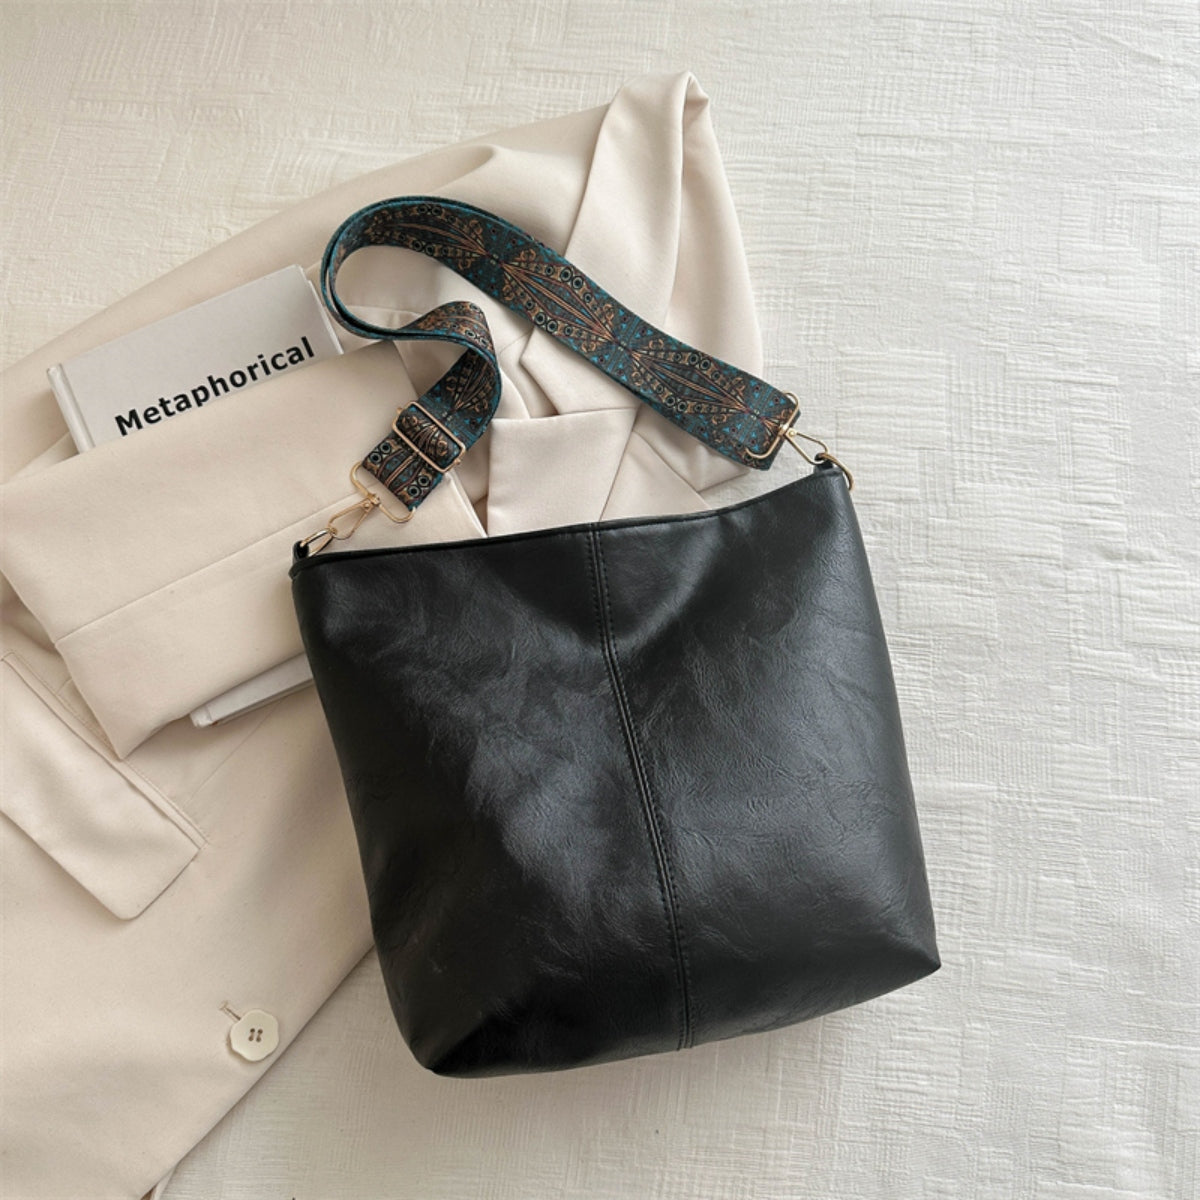 PU Leather Adjustable Strap Shoulder Bag Black One Size